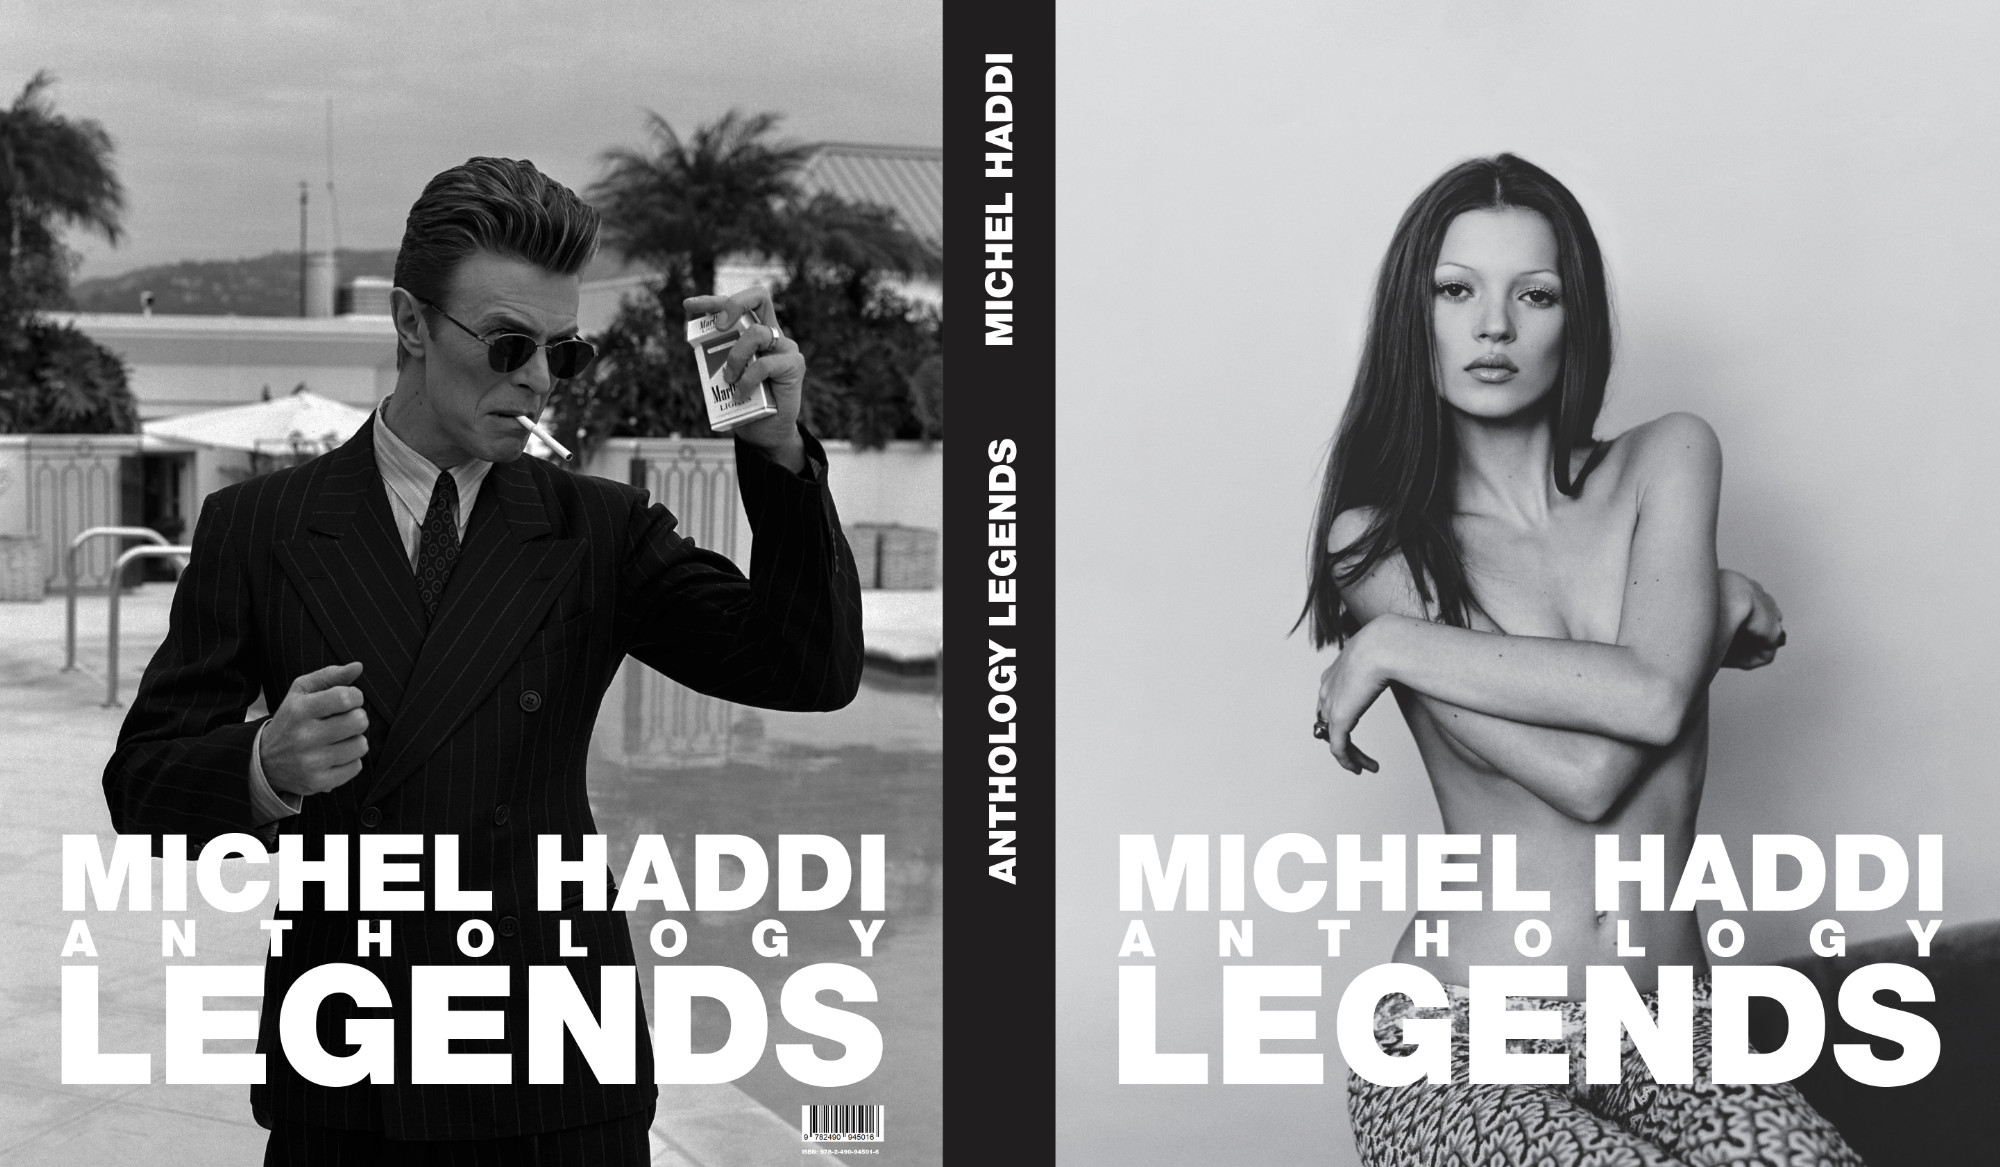 Anthology Legends - Kate Moss by Michel Haddi